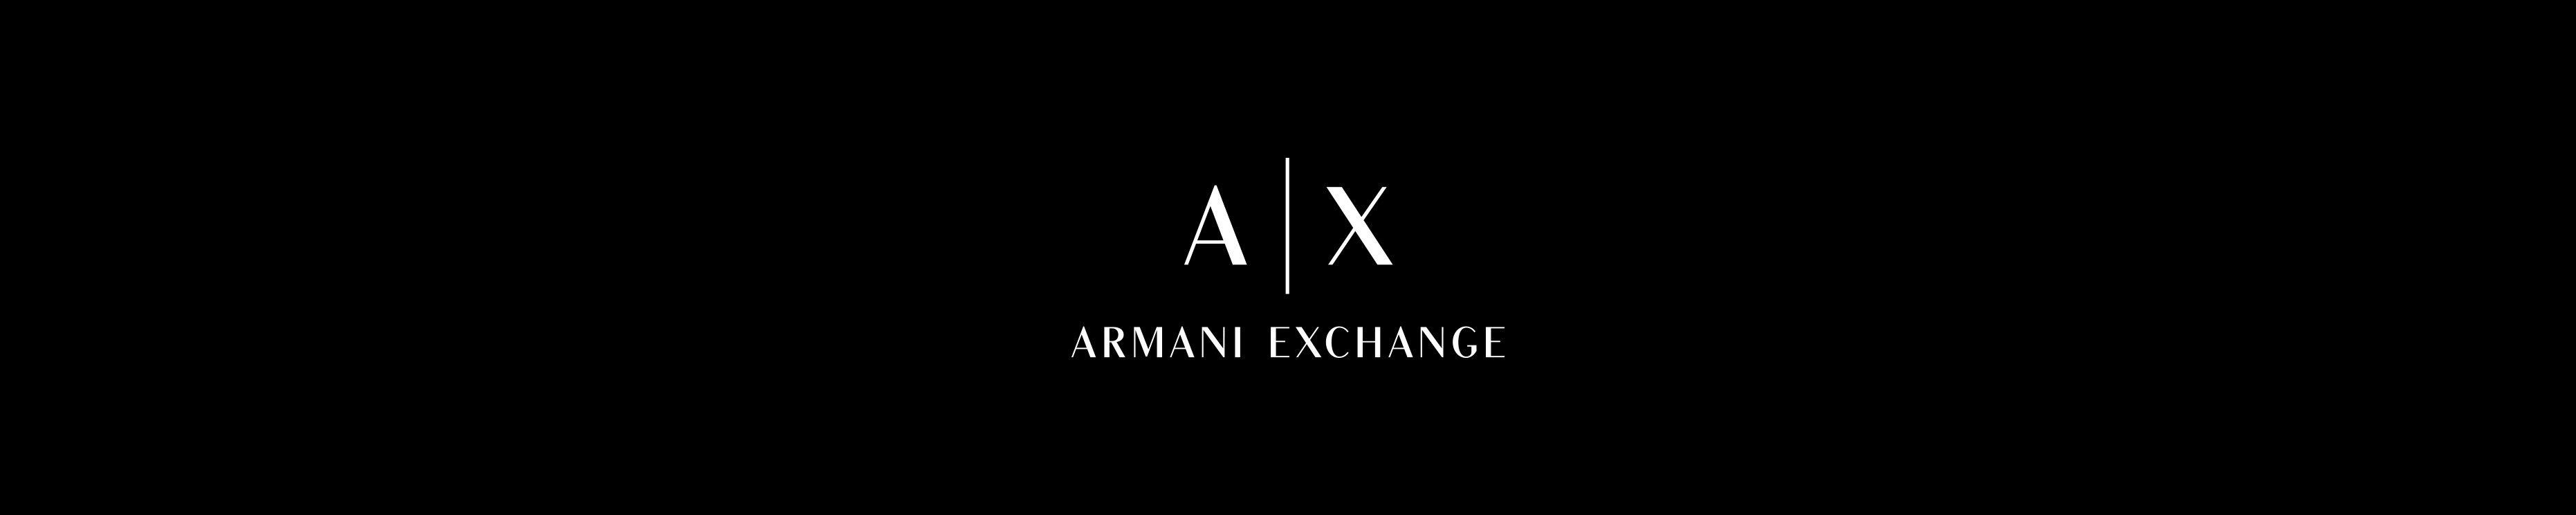 Armani Exchange Logo - Amazon.com: Armani Exchange: Women's Tees